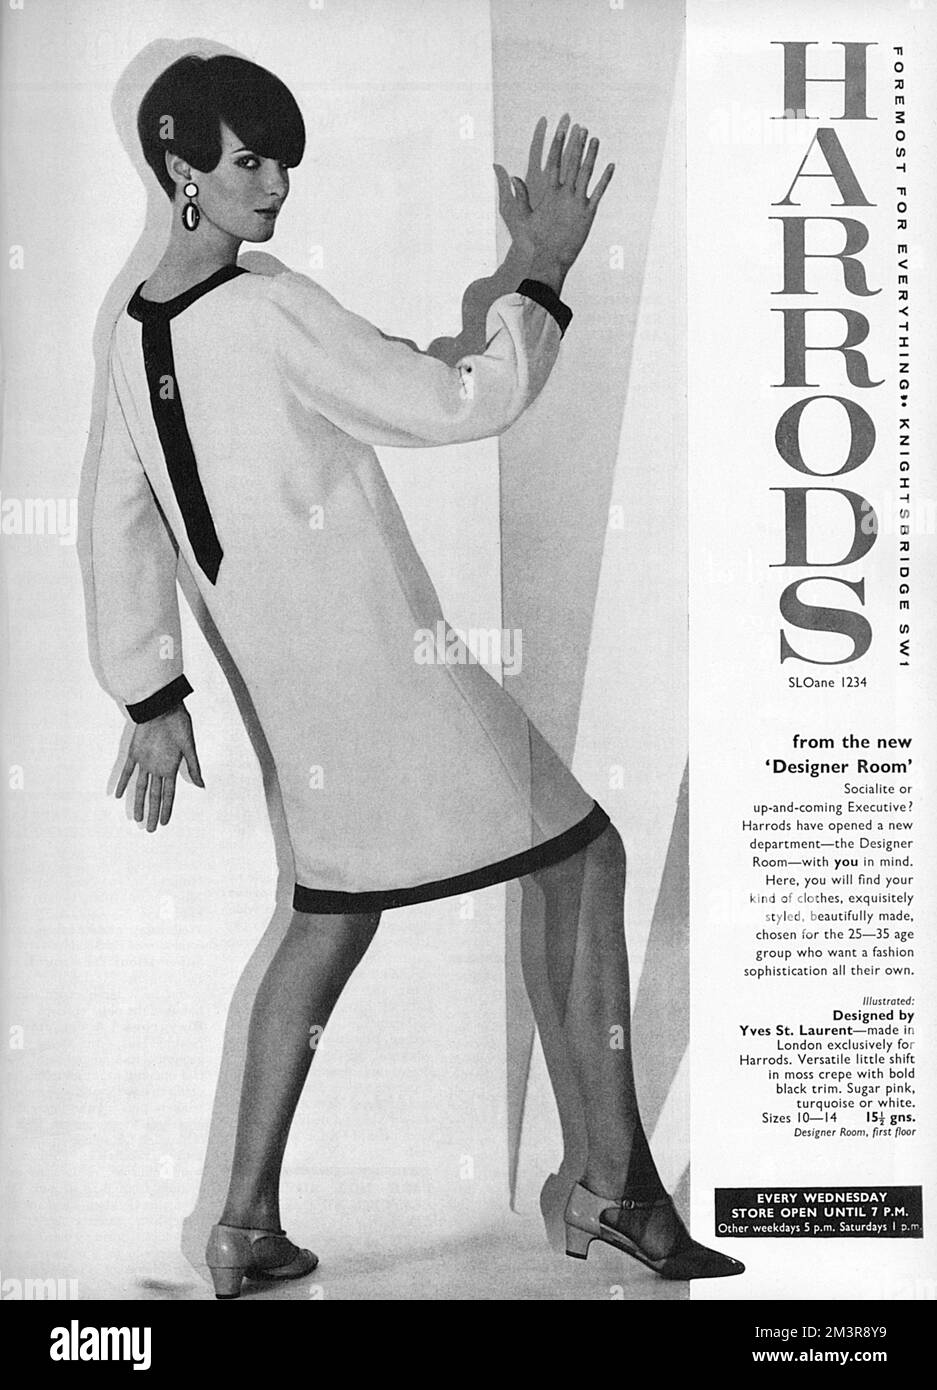 Werbung für das Londoner Kaufhaus Harrods mit einem knielangen, langärmeligen Etuikleid, das von Yves St Laurent entworfen wurde, aber in London ausschließlich für Harrods hergestellt wurde (ein Beispiel für Couture Designer, die ihre Designs für kostengünstigere Linien in Kaufhäusern lizenzieren). Das Kleid war nur ein Beispiel, das Harrods in seiner neuen Designerabteilung anbot. Datum: 1965 Stockfoto